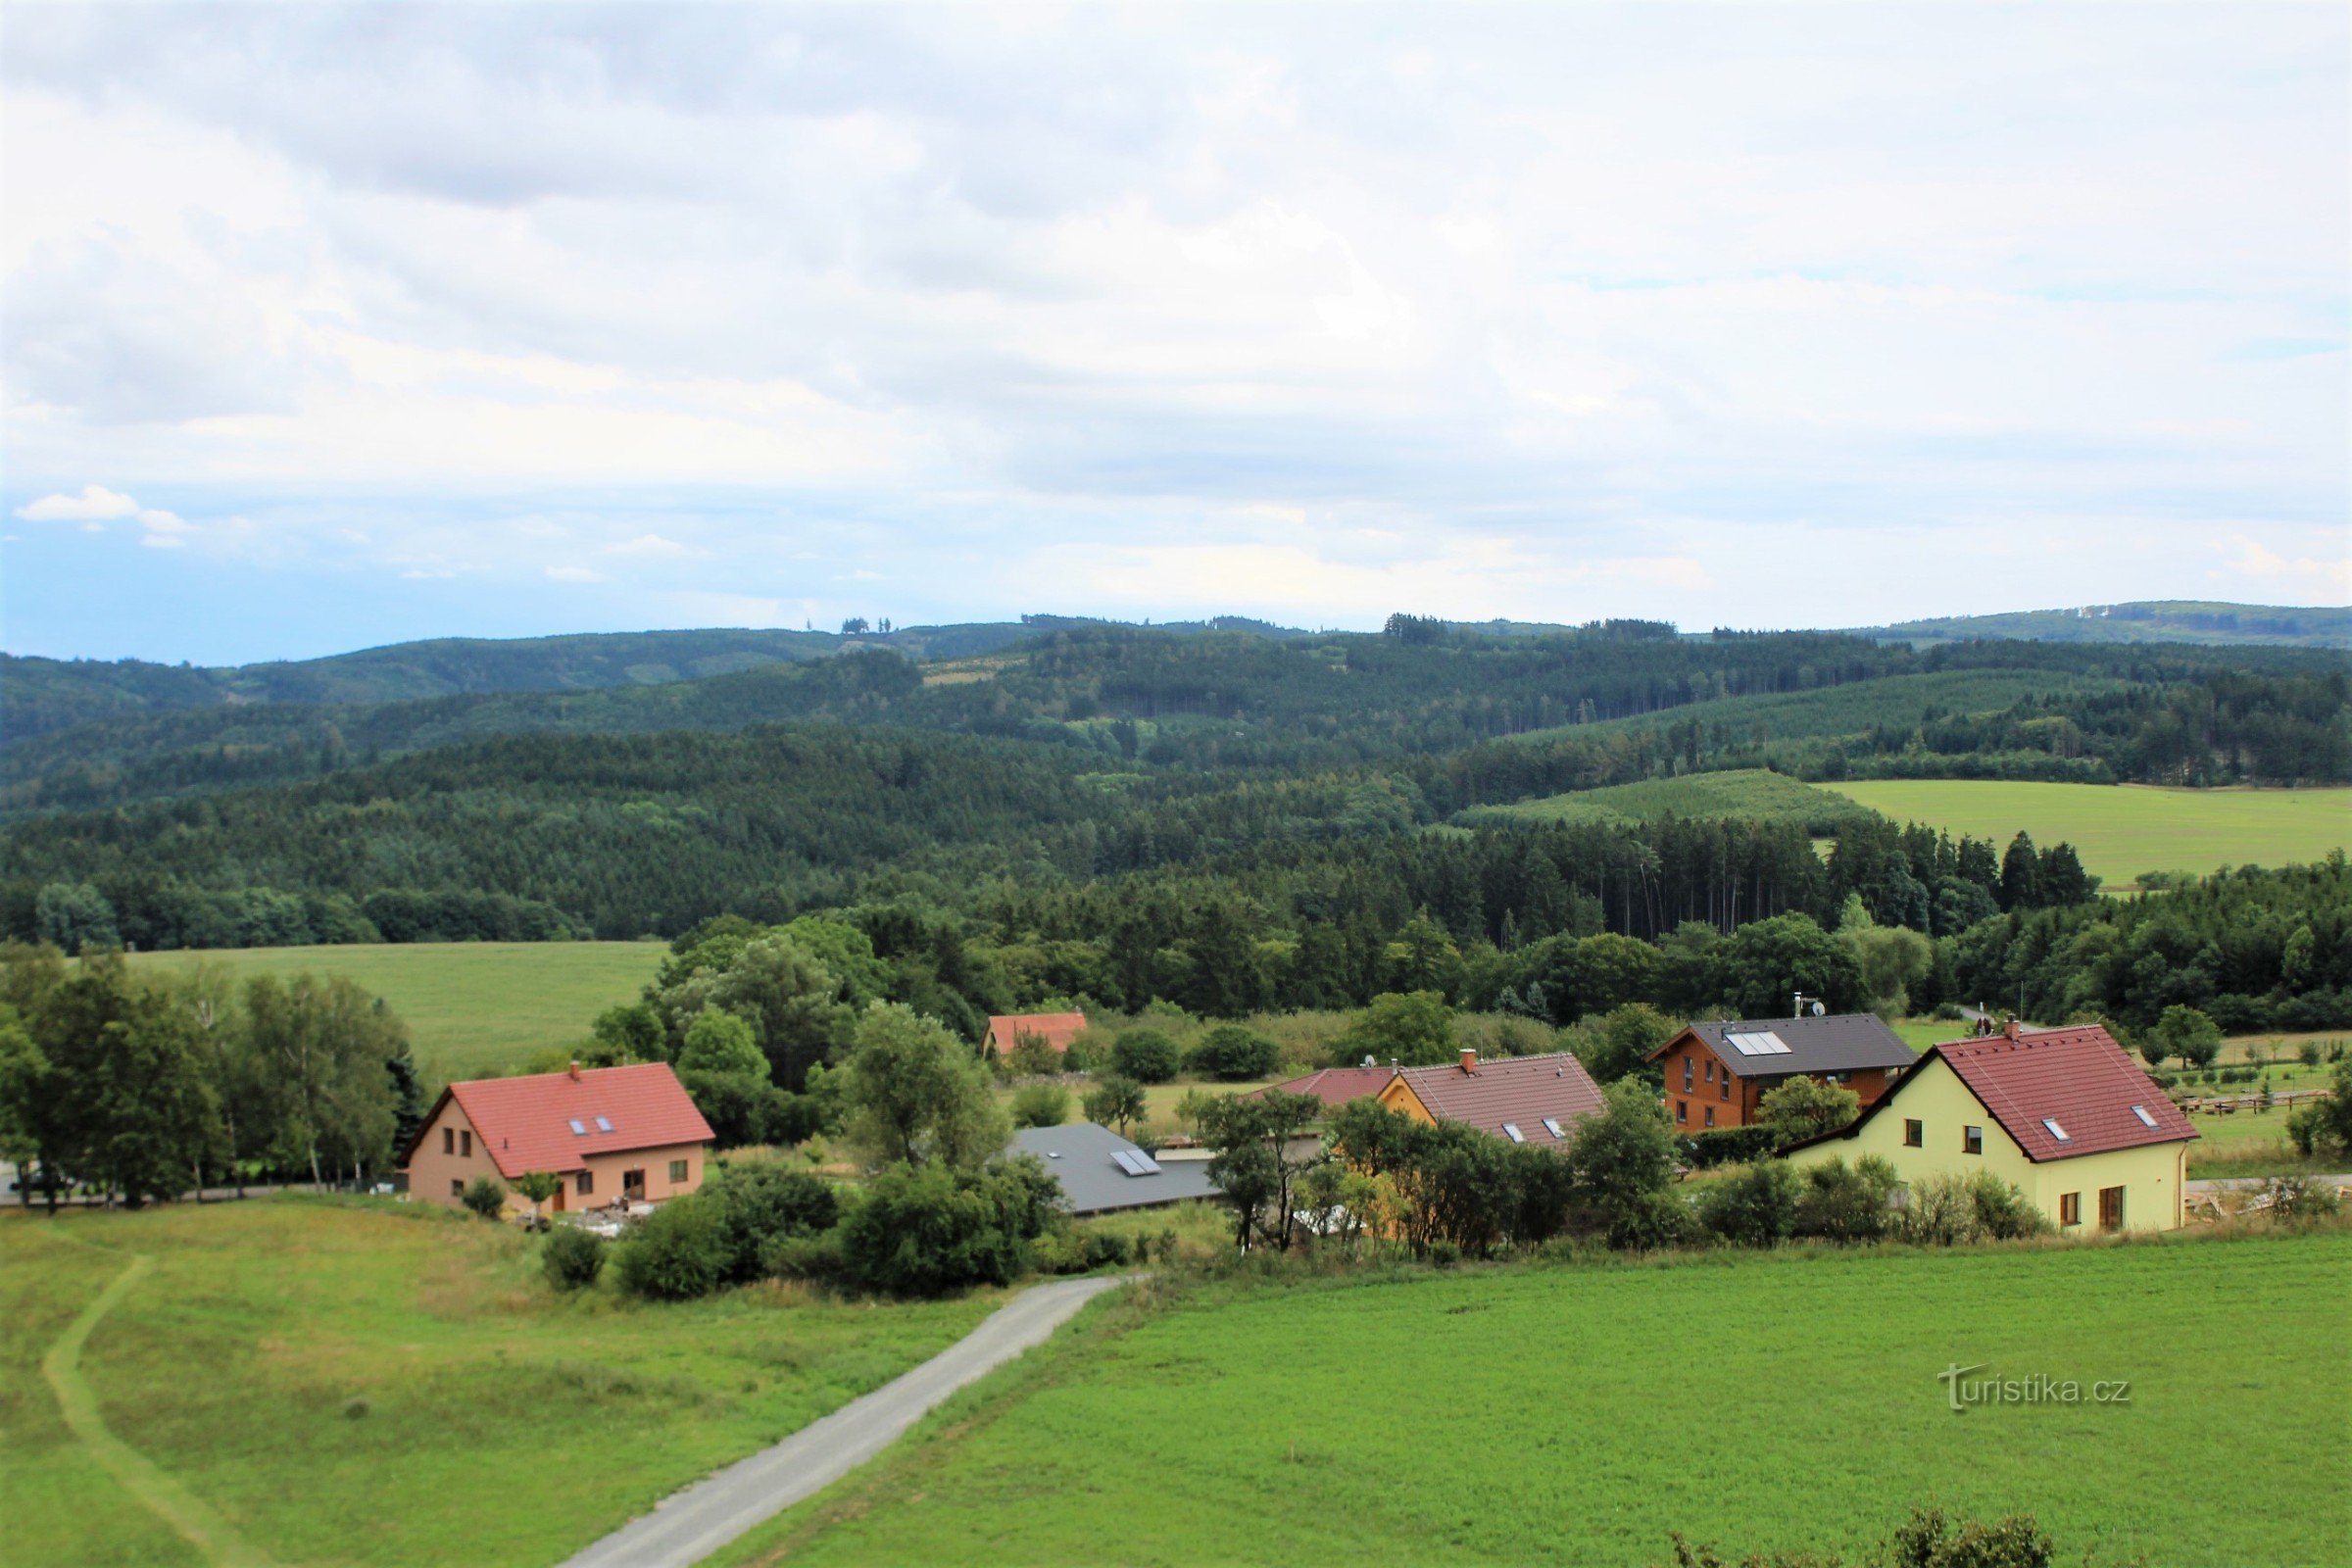 Kilátás a falu felső részén lévő kilátóból a Hořický hřbet felé